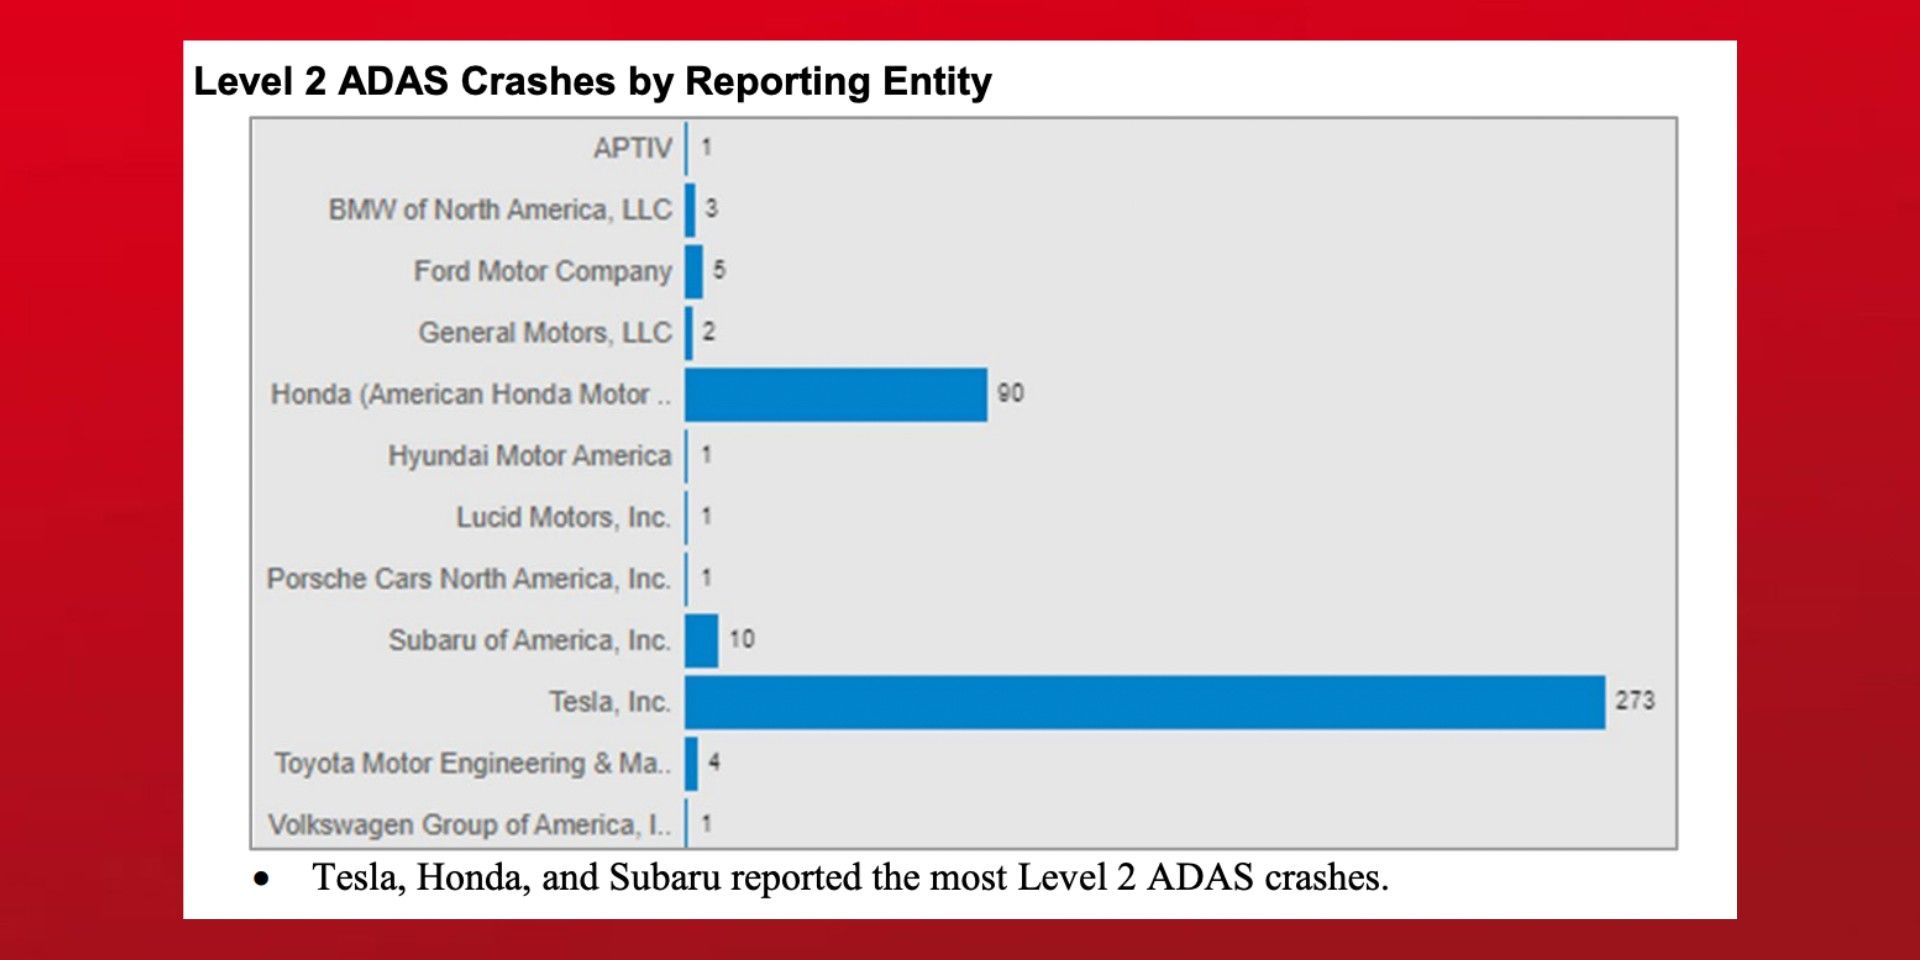 Level 2 ADAS crashes